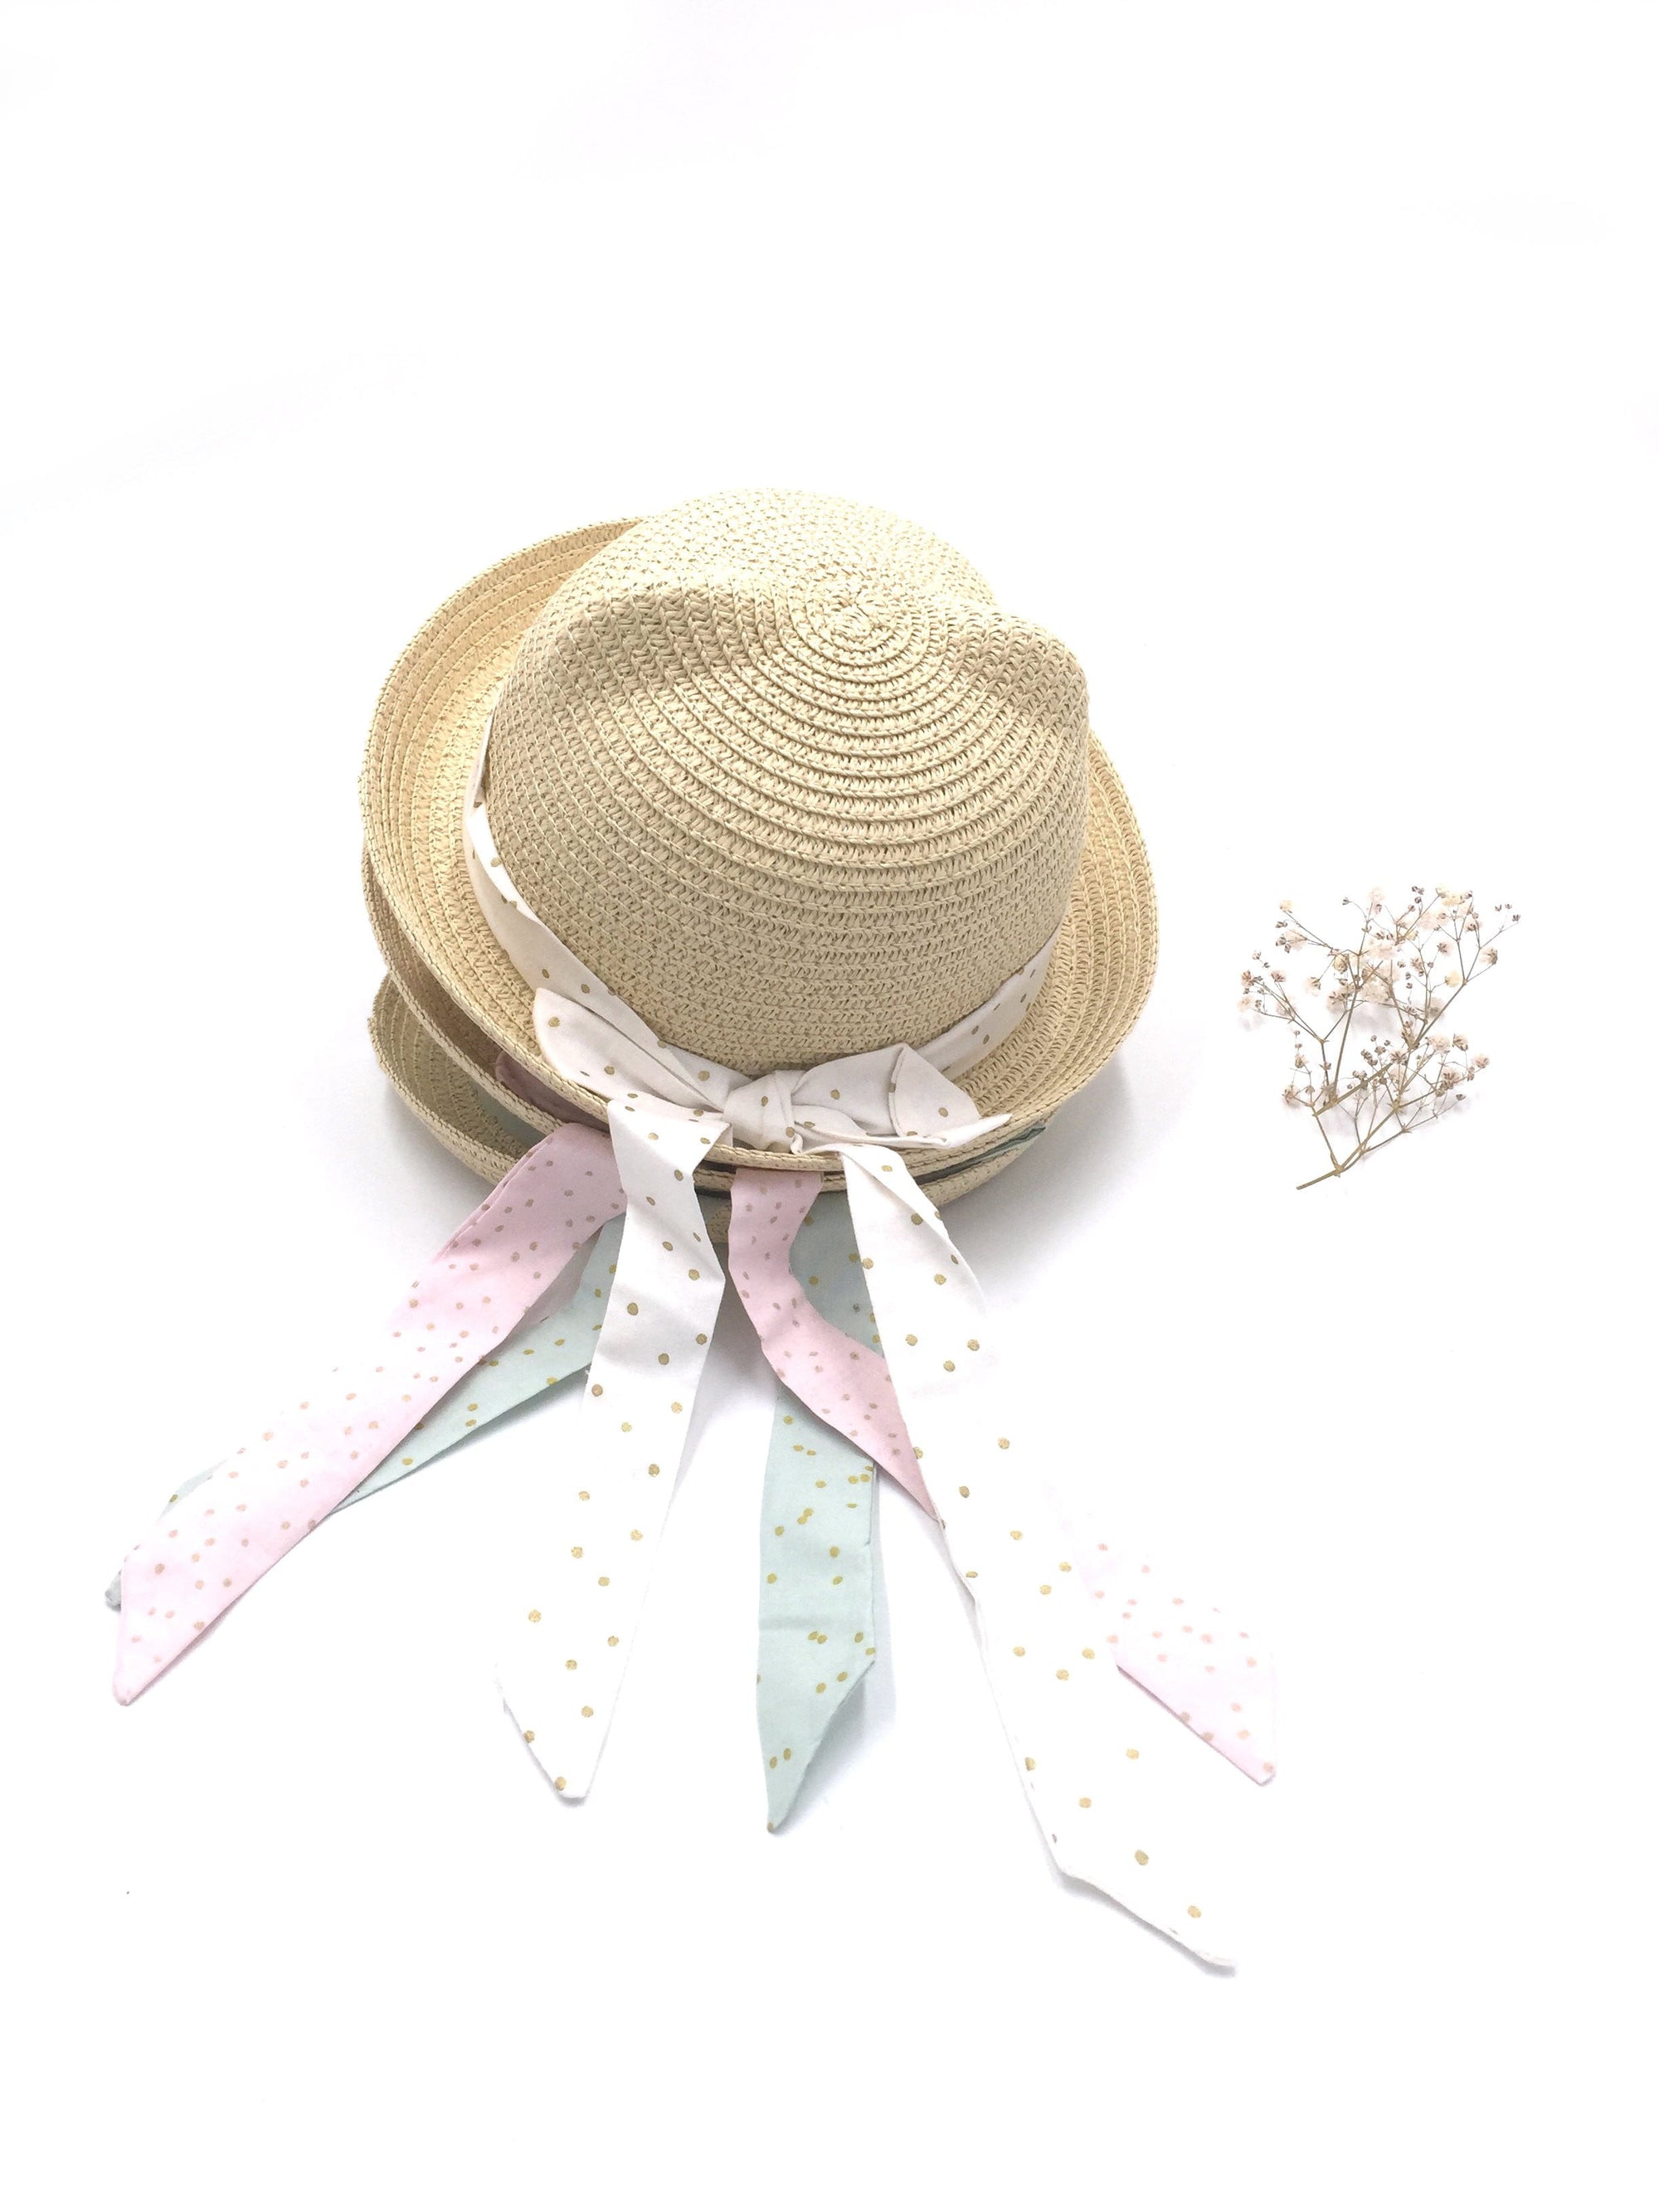 Chapeau de paille à pois doré - Crapaud Chou, le cadeau de naissance original et personnalisé